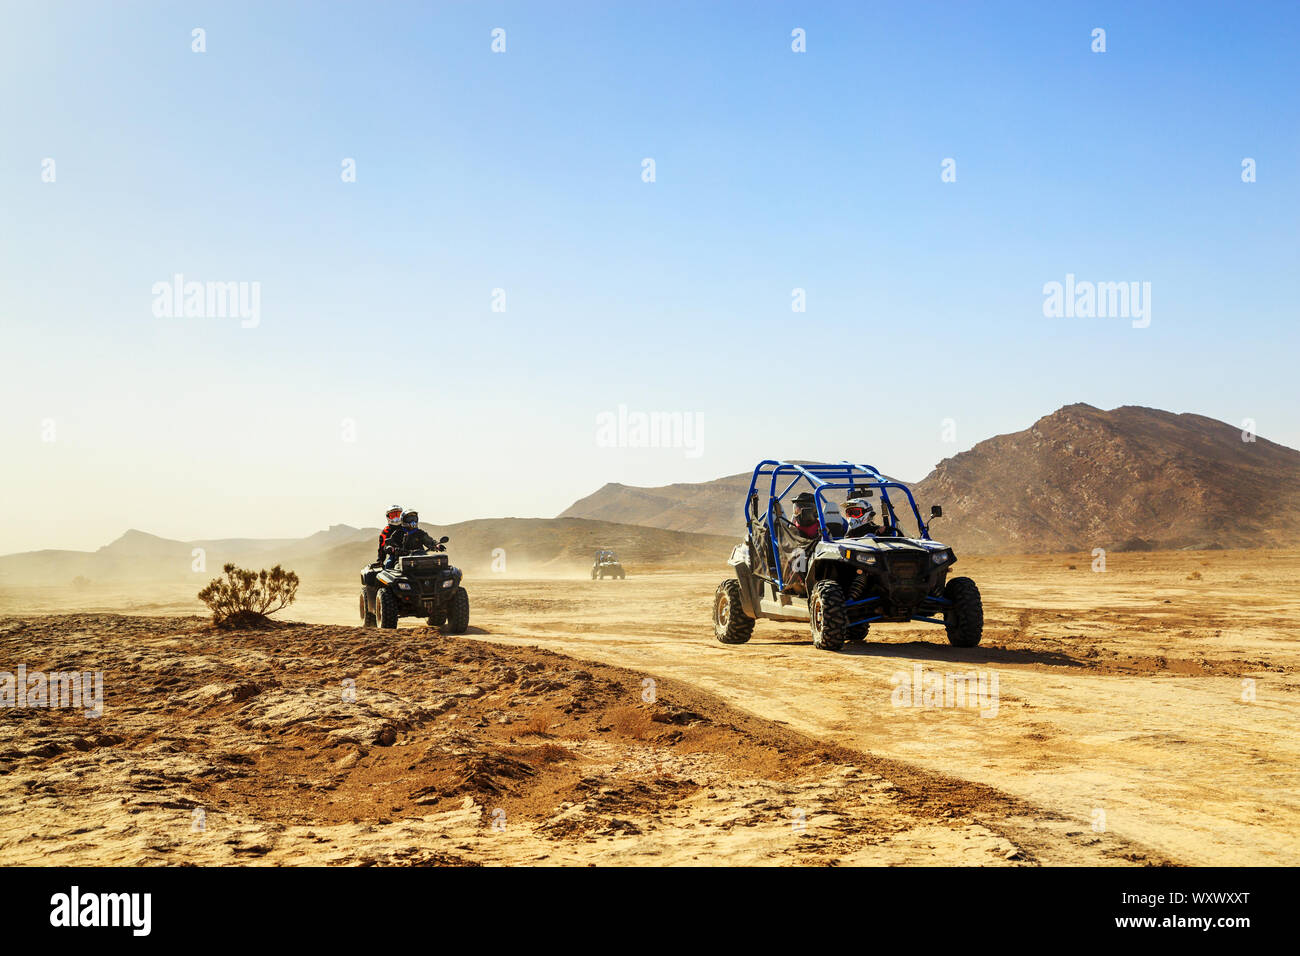 Merzouga, Marokko - Feb 24, 2016: Konvoi von Geländefahrzeugen (RZR, Quads und Motorräder) in Marokko Wüste in der Nähe von Matala. Merzouga ist berühmt für seine d Stockfoto